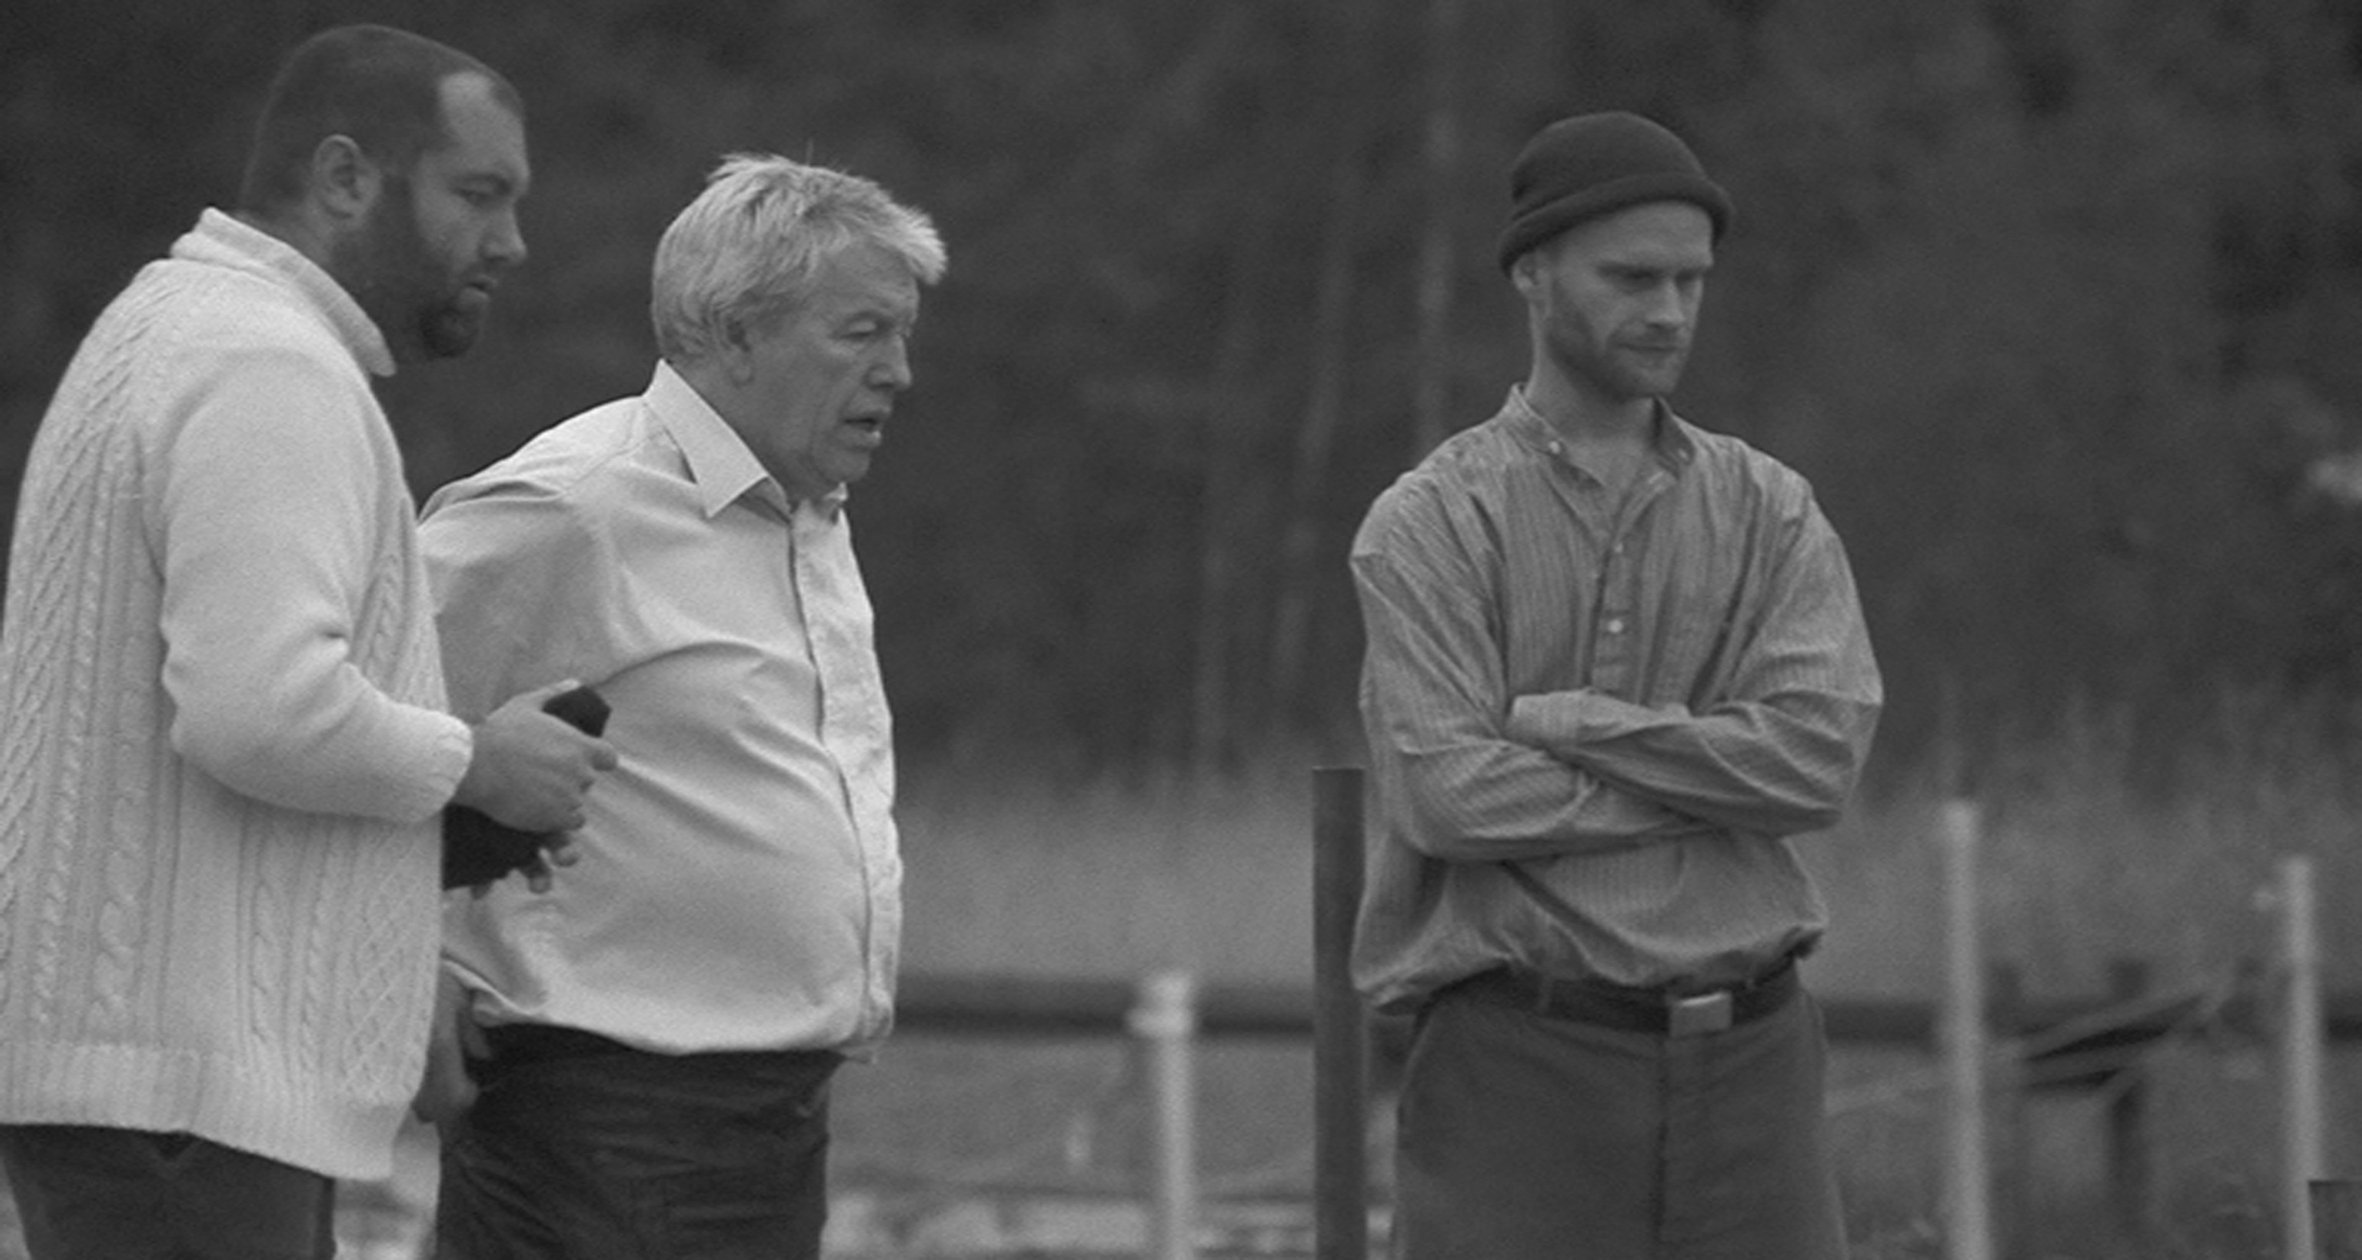 Håvard, Mr Staaff and Egil.